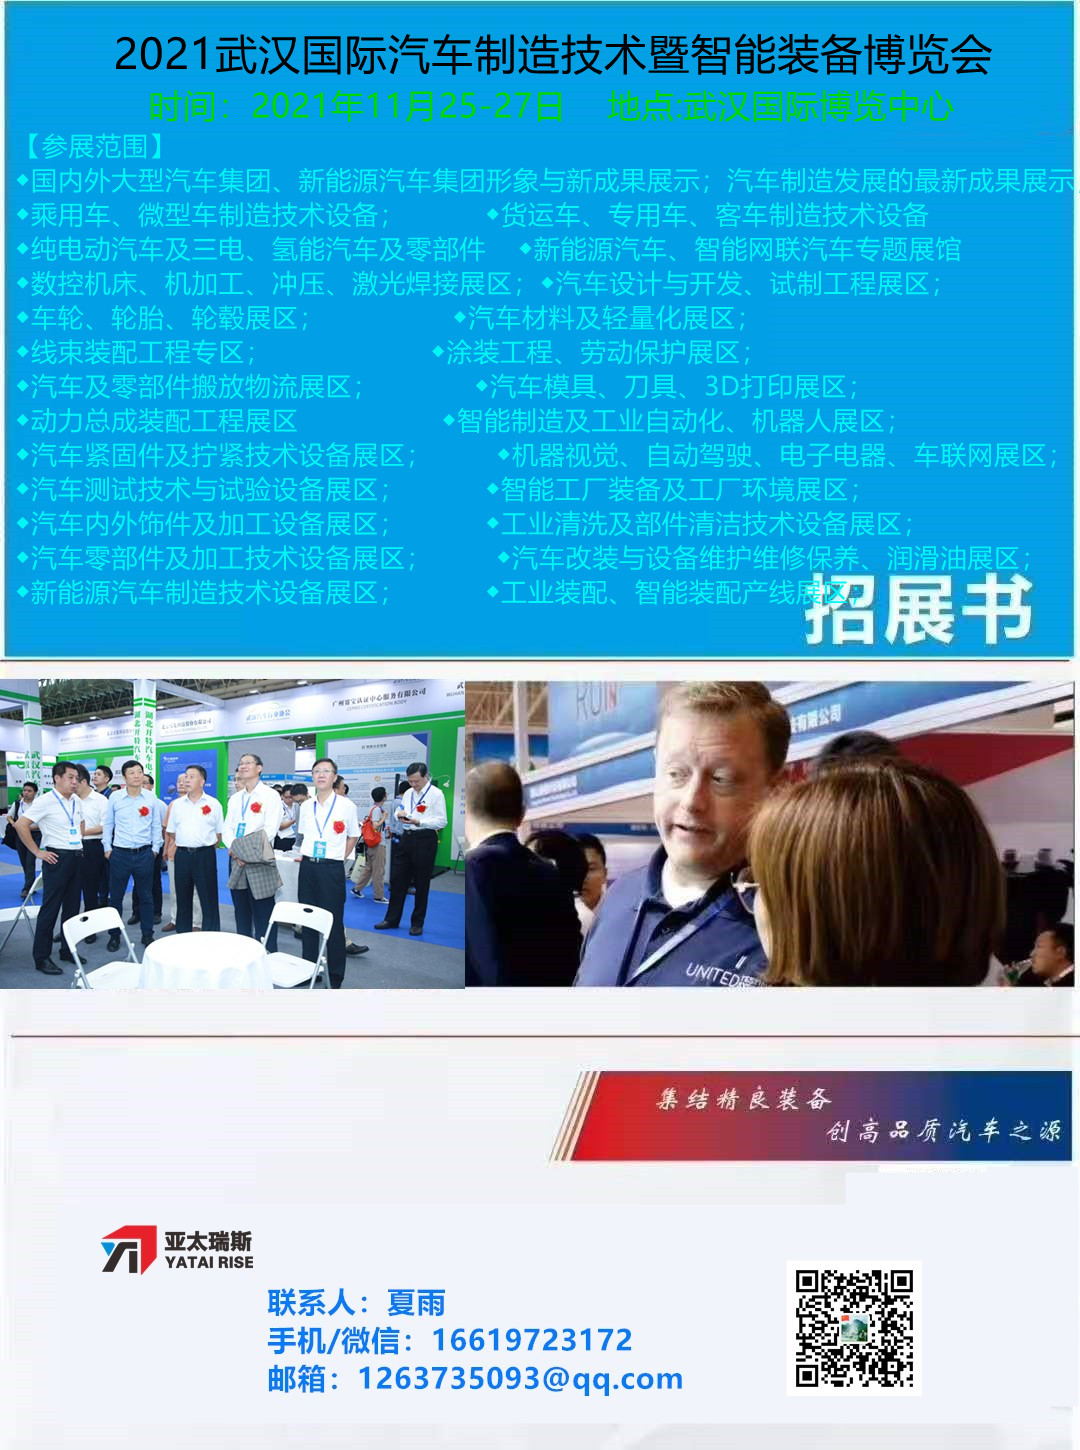 2021*十一届北京国际新能源汽车工业展览会